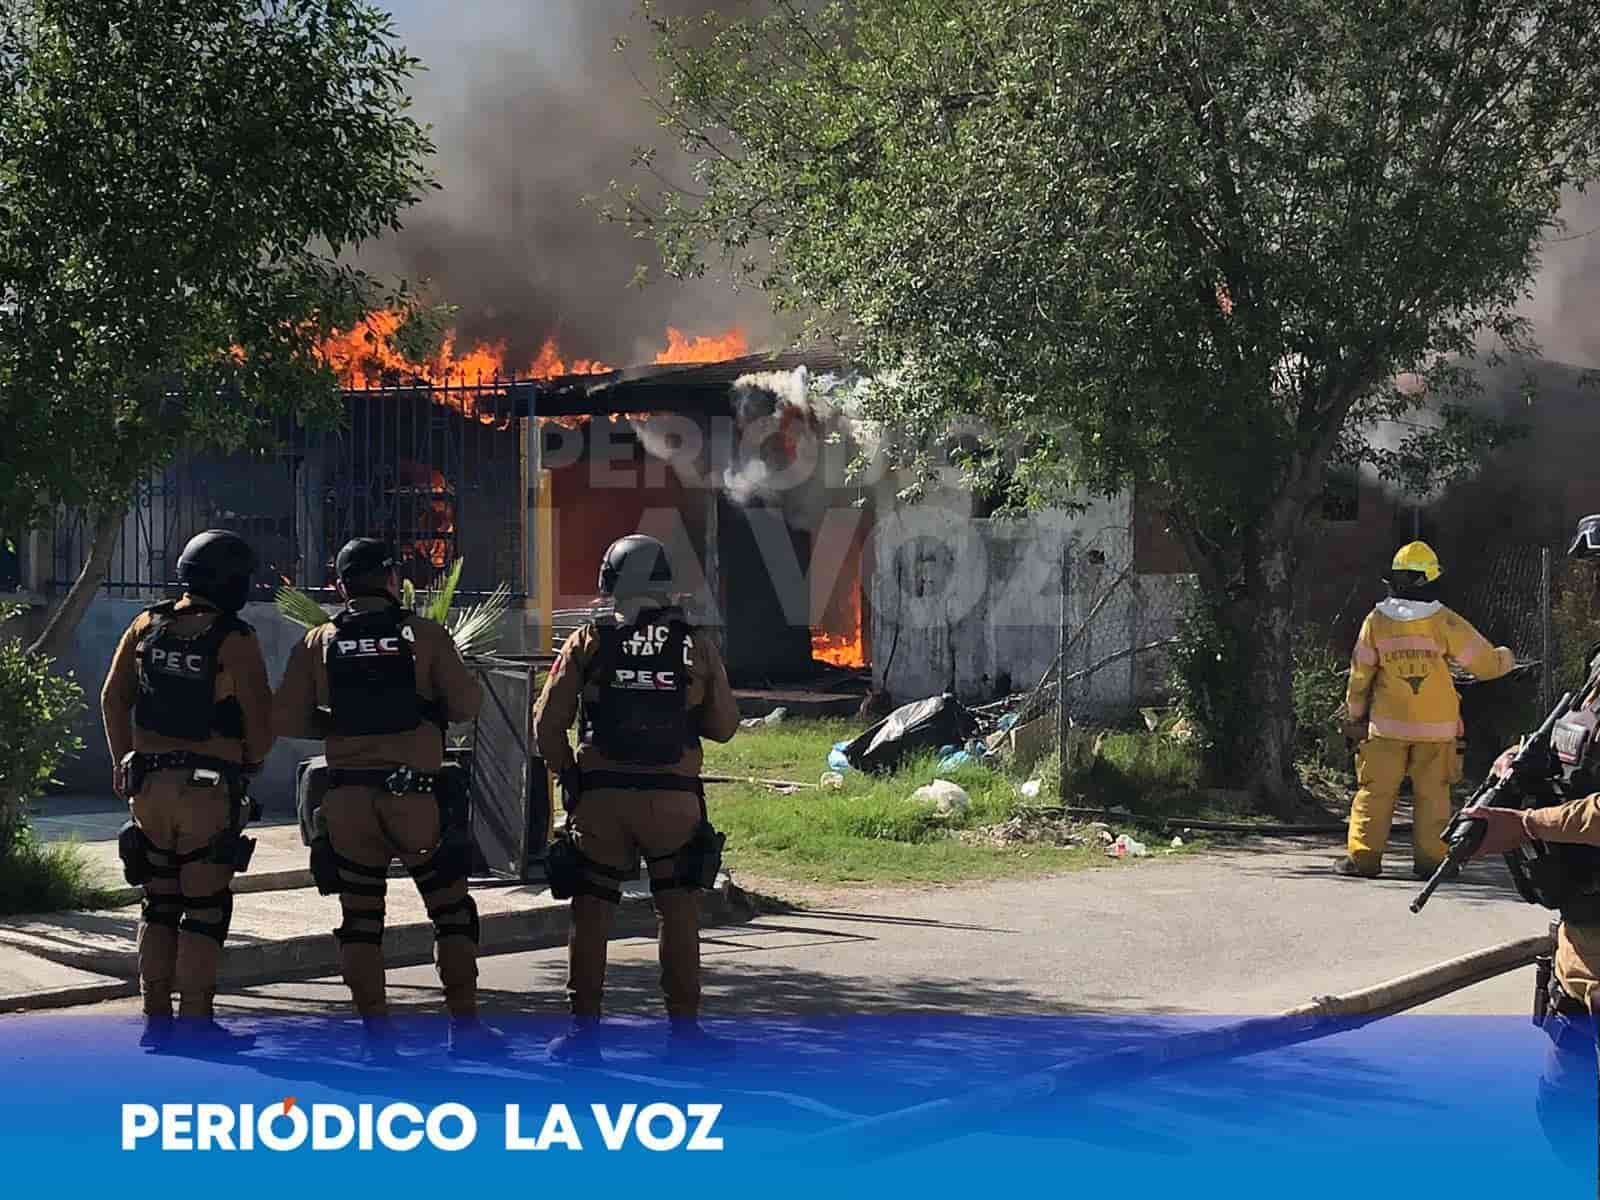 Más de 300 MIL PESOS en daños ocasionados a casa tras incendio